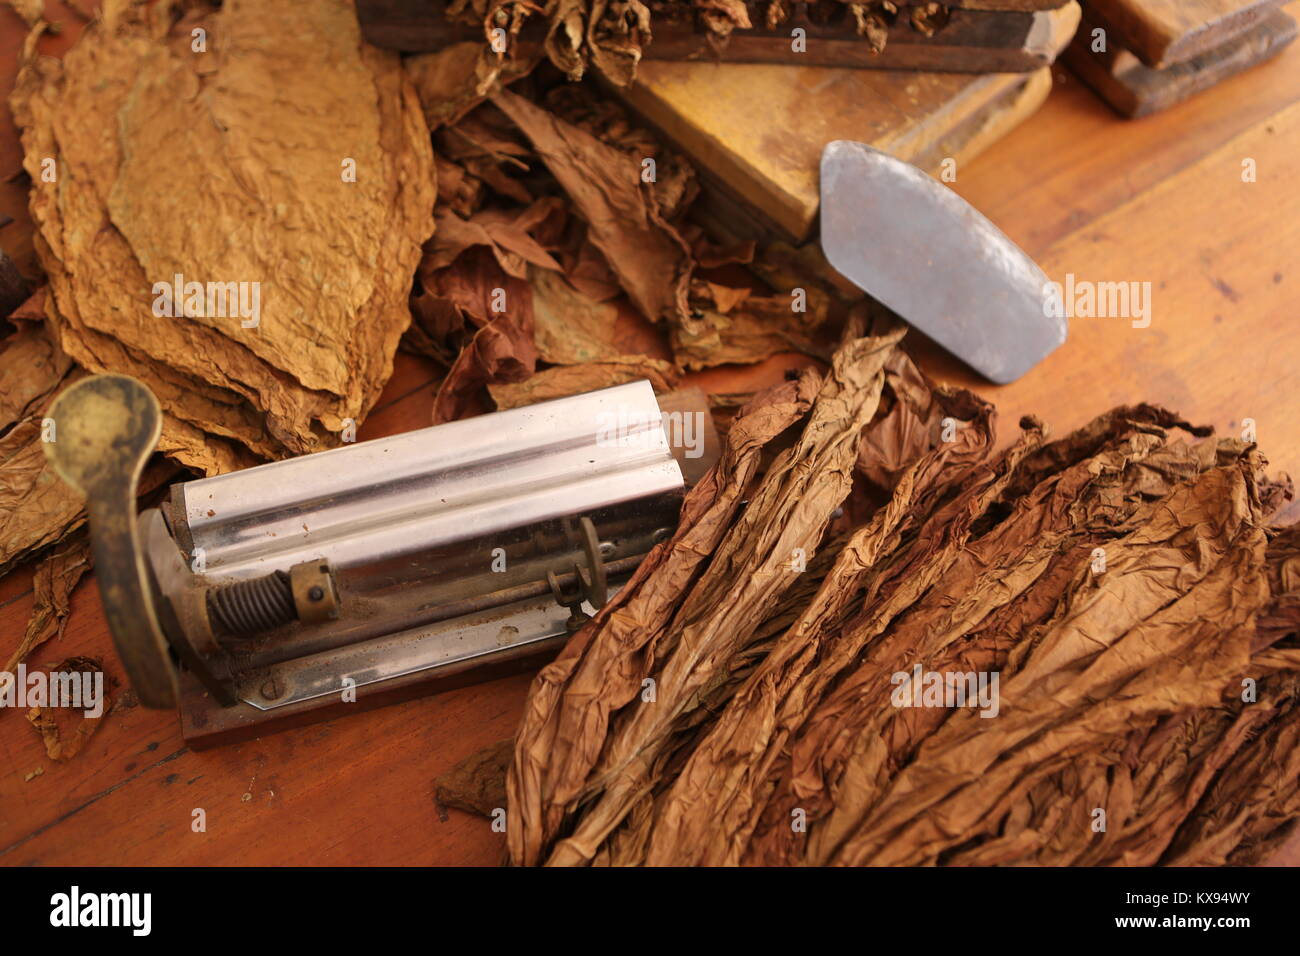 Zigarren Herstellung in Kuba - Zigarren Herstellung in Kuba Stockfoto